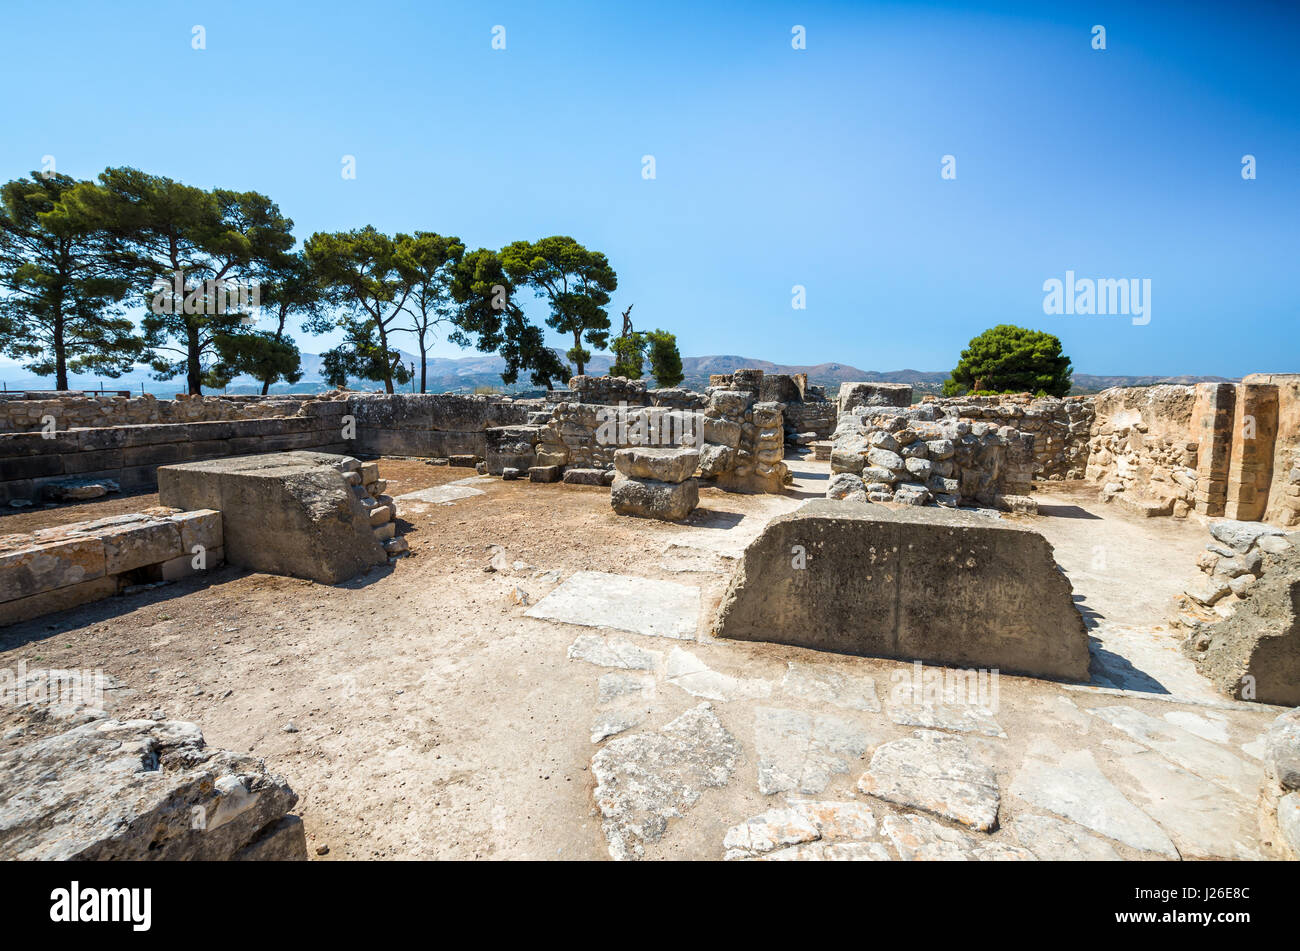 Le site de Phaistos, île de Crète, Grèce grec. ruines du palais minoen de festos dans l'île de Crète Banque D'Images